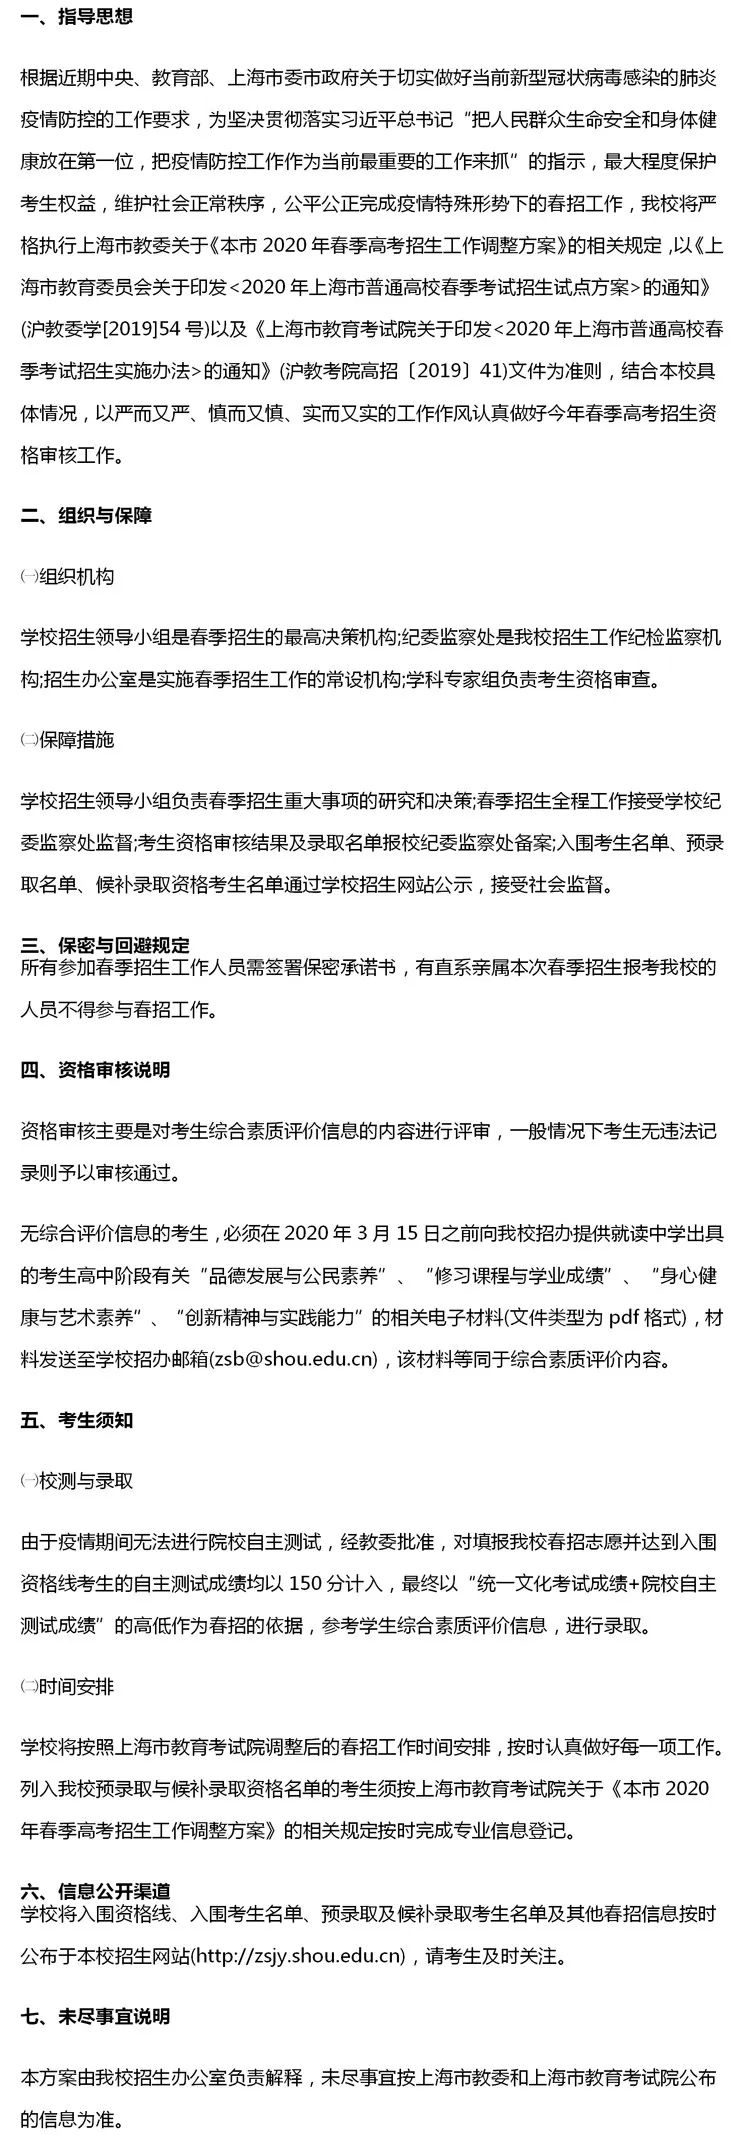 上海海洋大学2020年春季招生资格审核工作方案